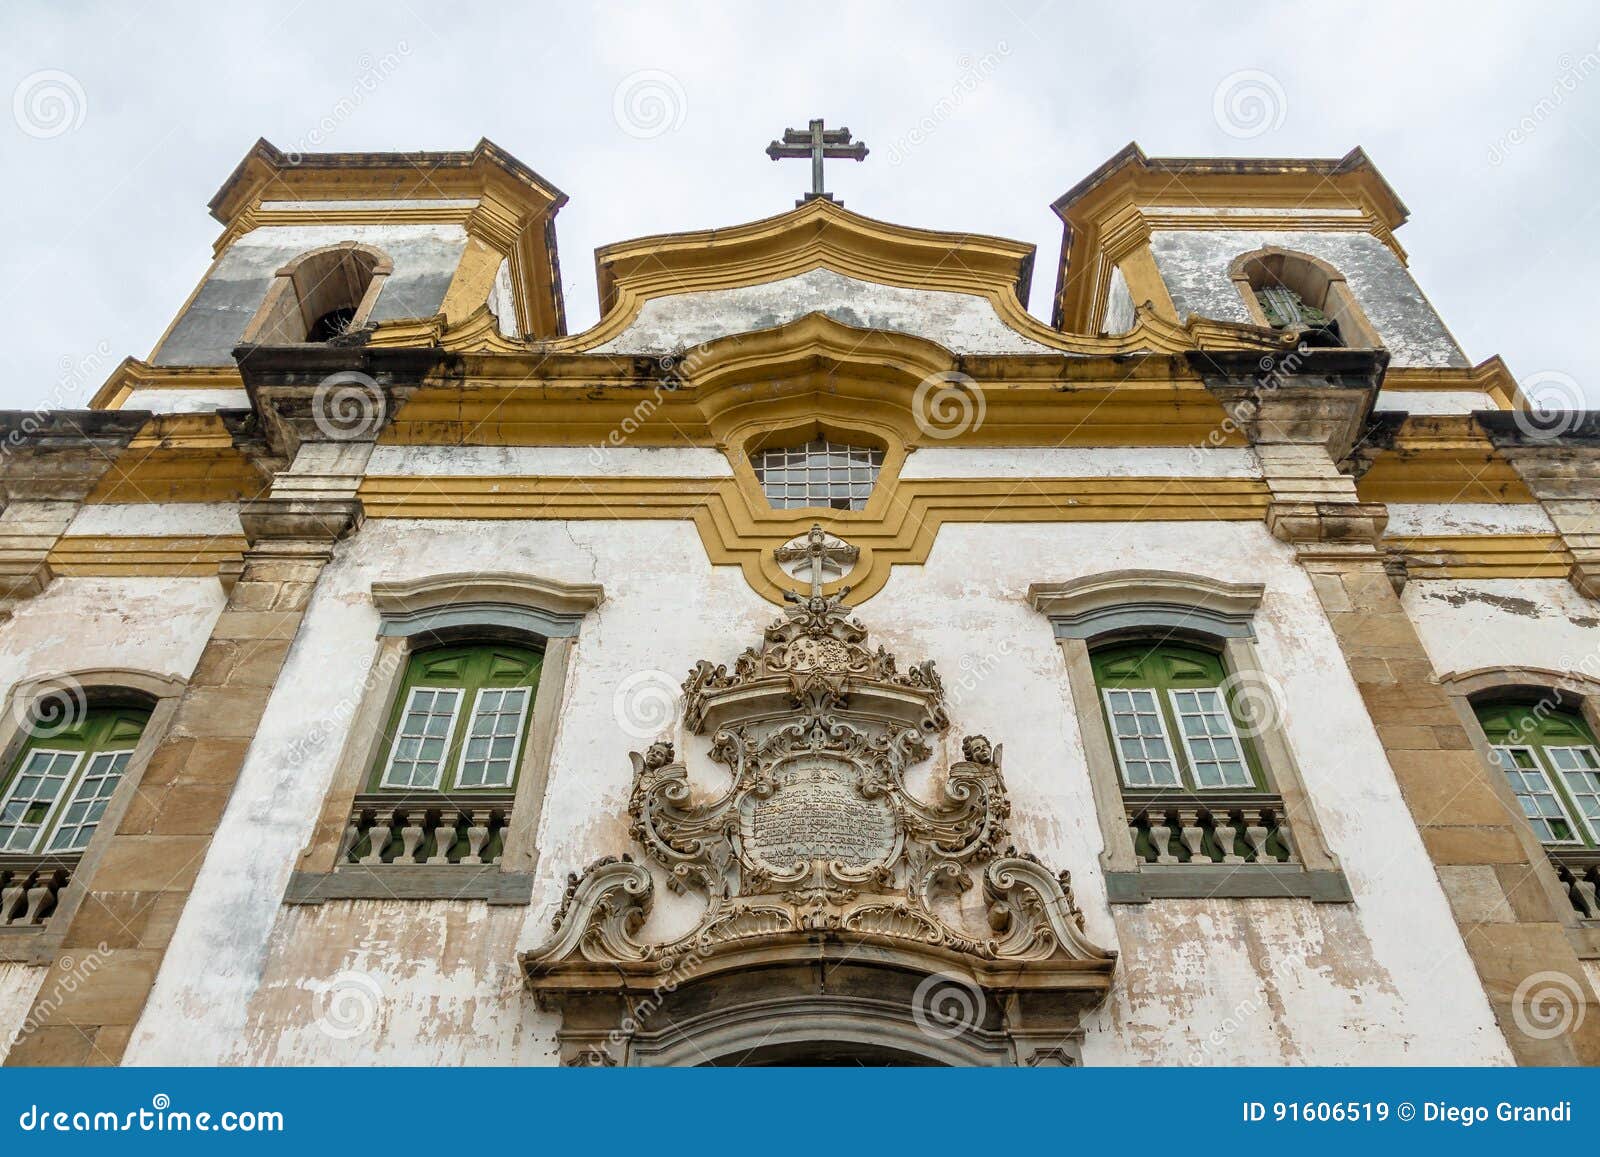 sao francisco de assis church facade detail - mariana, minas gerais, brazil